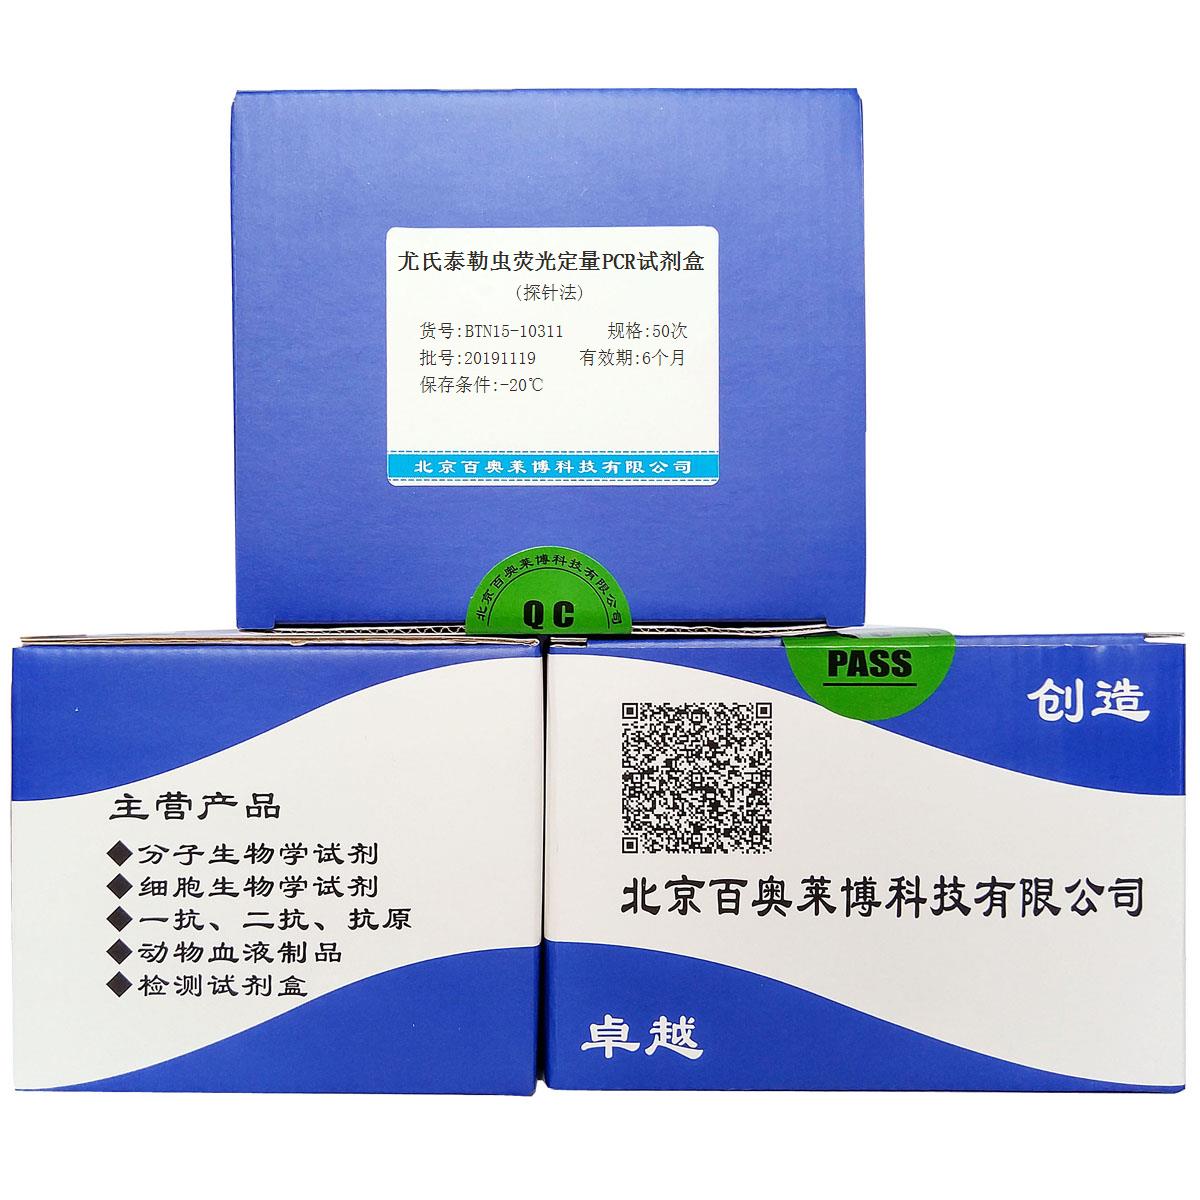 尤氏泰勒虫荧光定量PCR试剂盒(探针法)